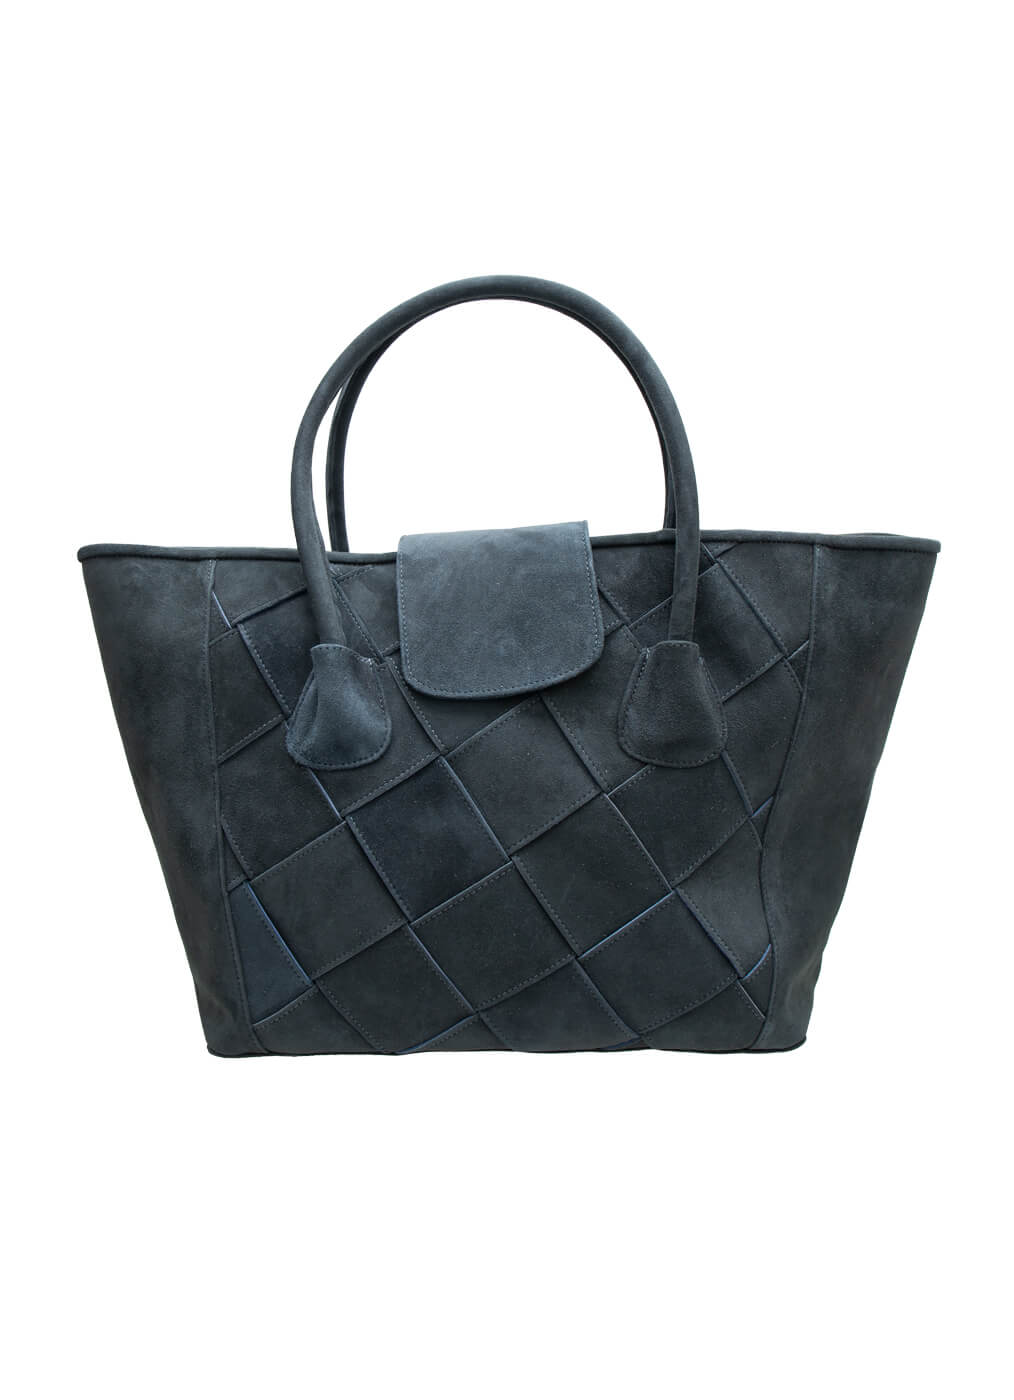 Goat Leather Bag “Ladies Basket Shopper”, dusty indigo